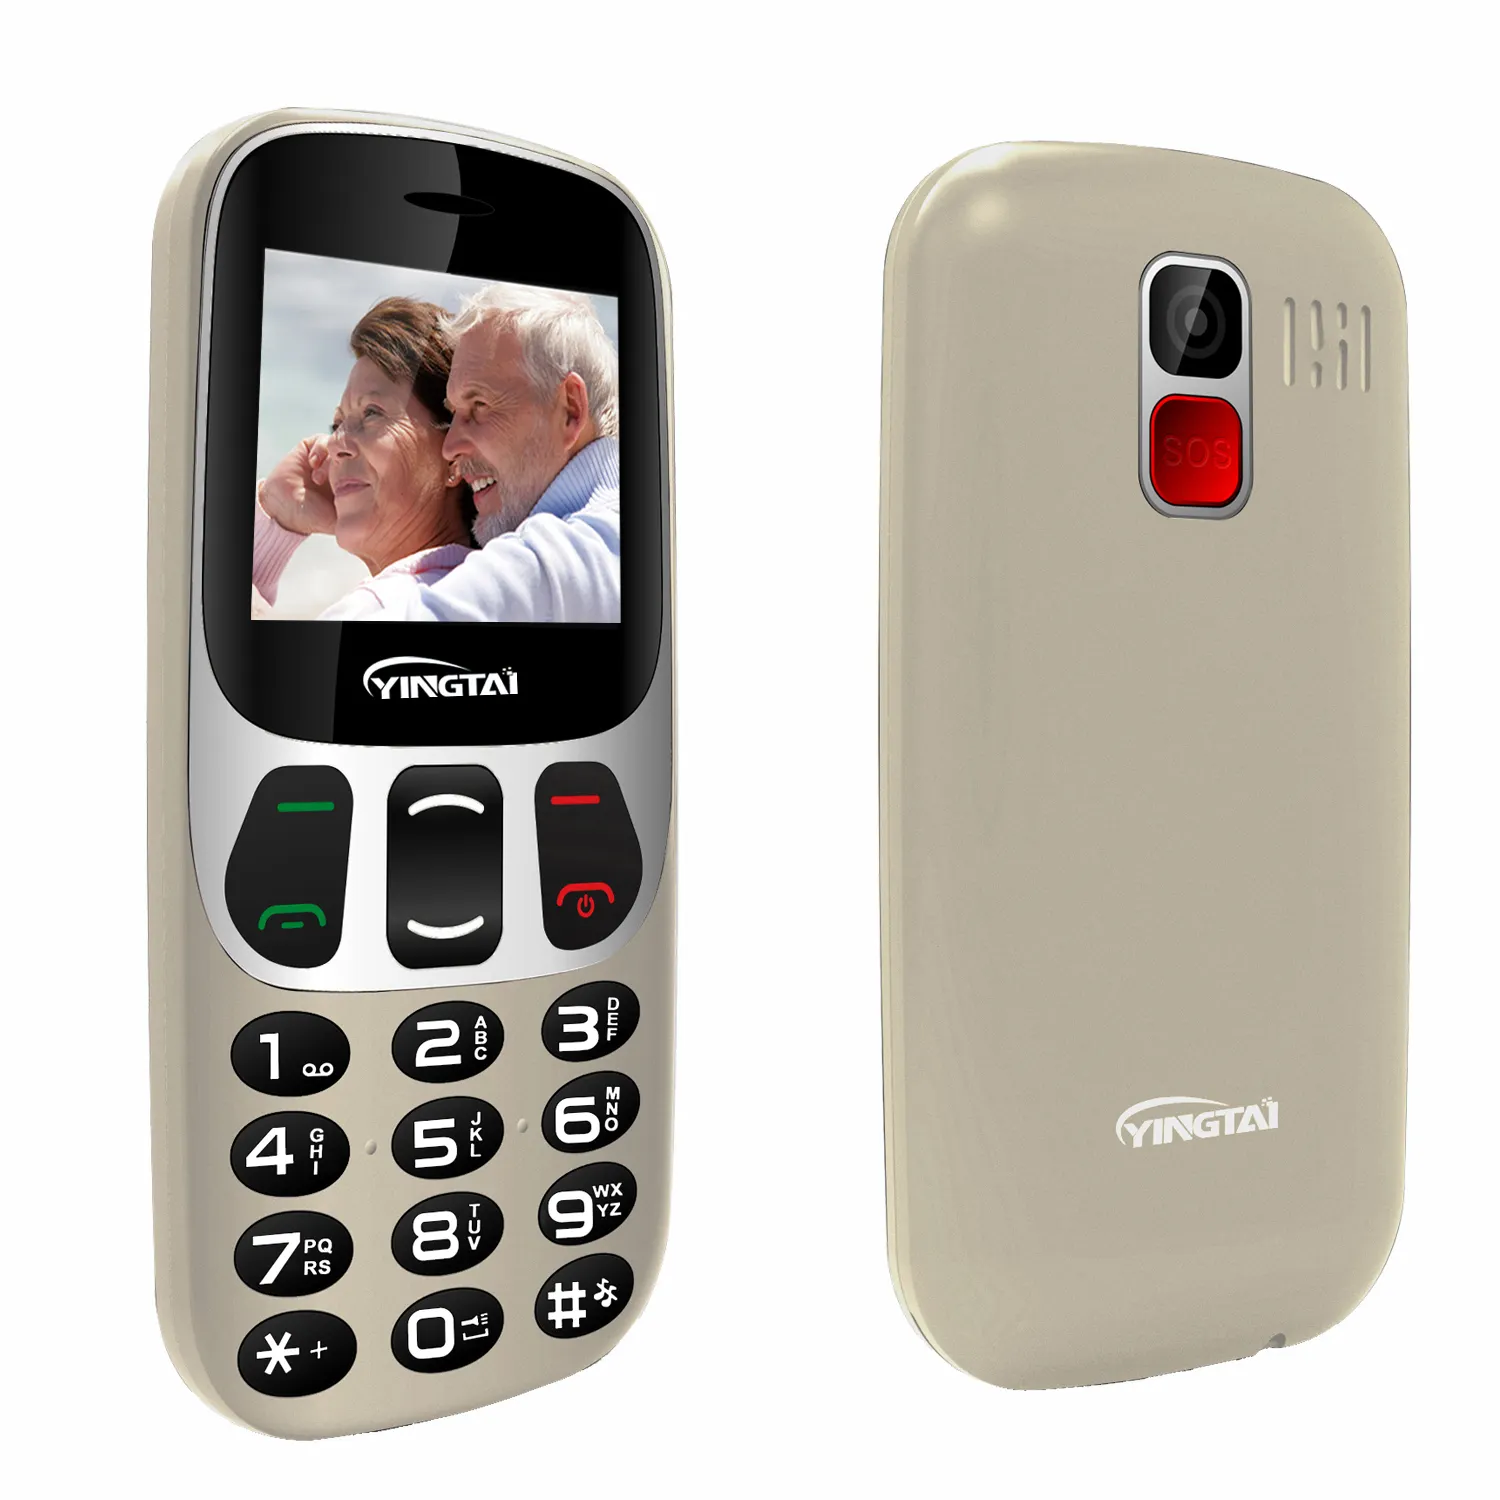 Teléfono Móvil para personas mayores, pantalla de borde curvo de 2,4 pulgadas con botones grandes